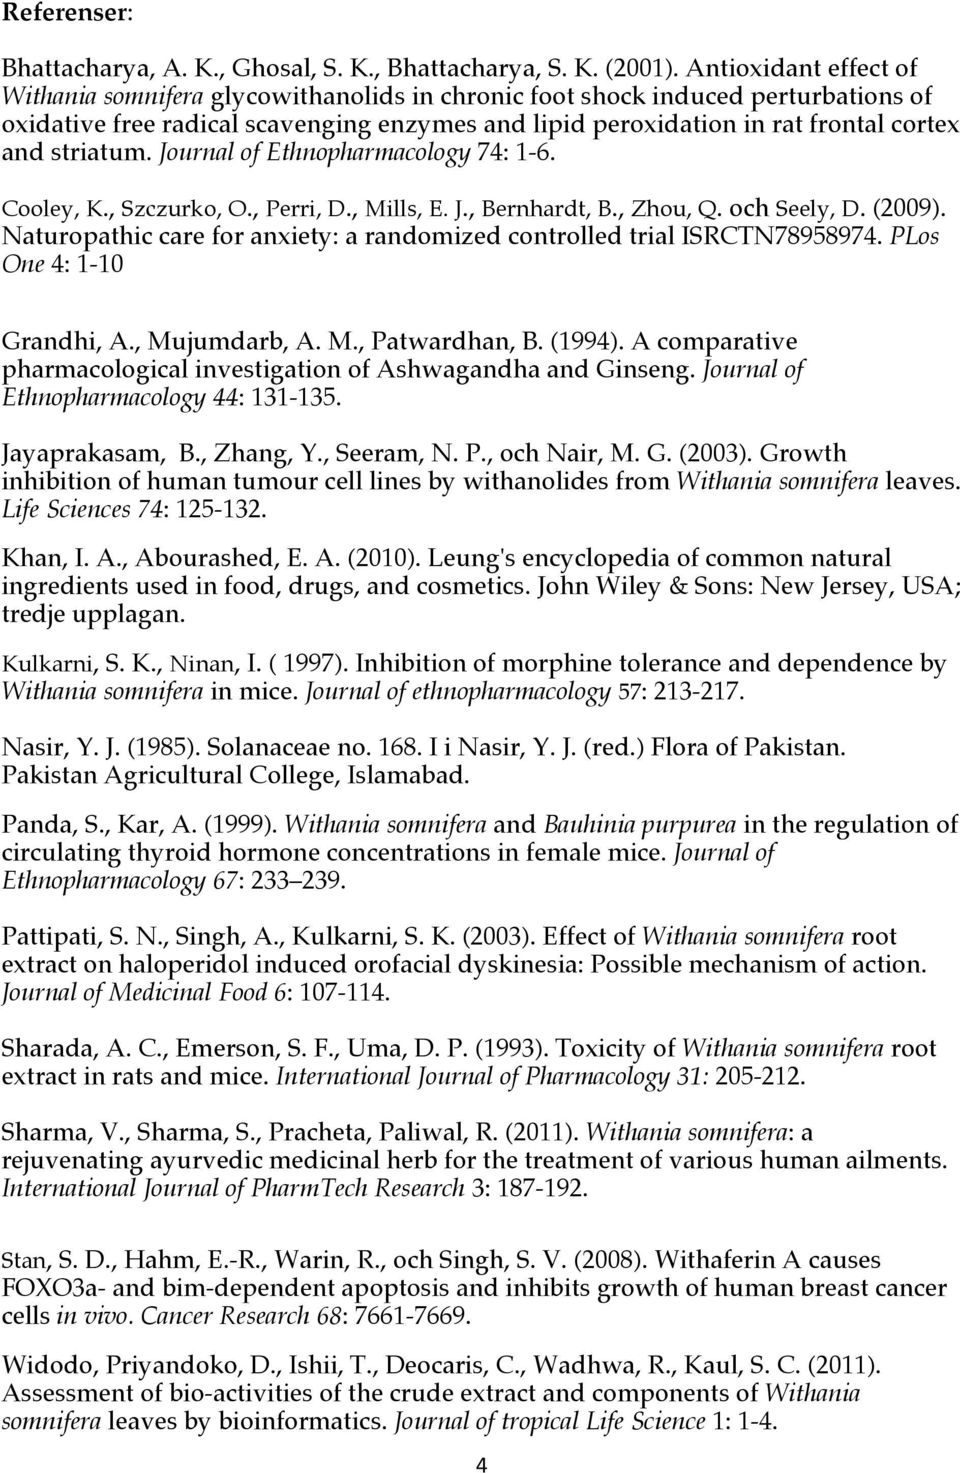 striatum. Journal of Ethnopharmacology 74: 1-6. Cooley, K., Szczurko, O., Perri, D., Mills, E. J., Bernhardt, B., Zhou, Q. och Seely, D. (2009).